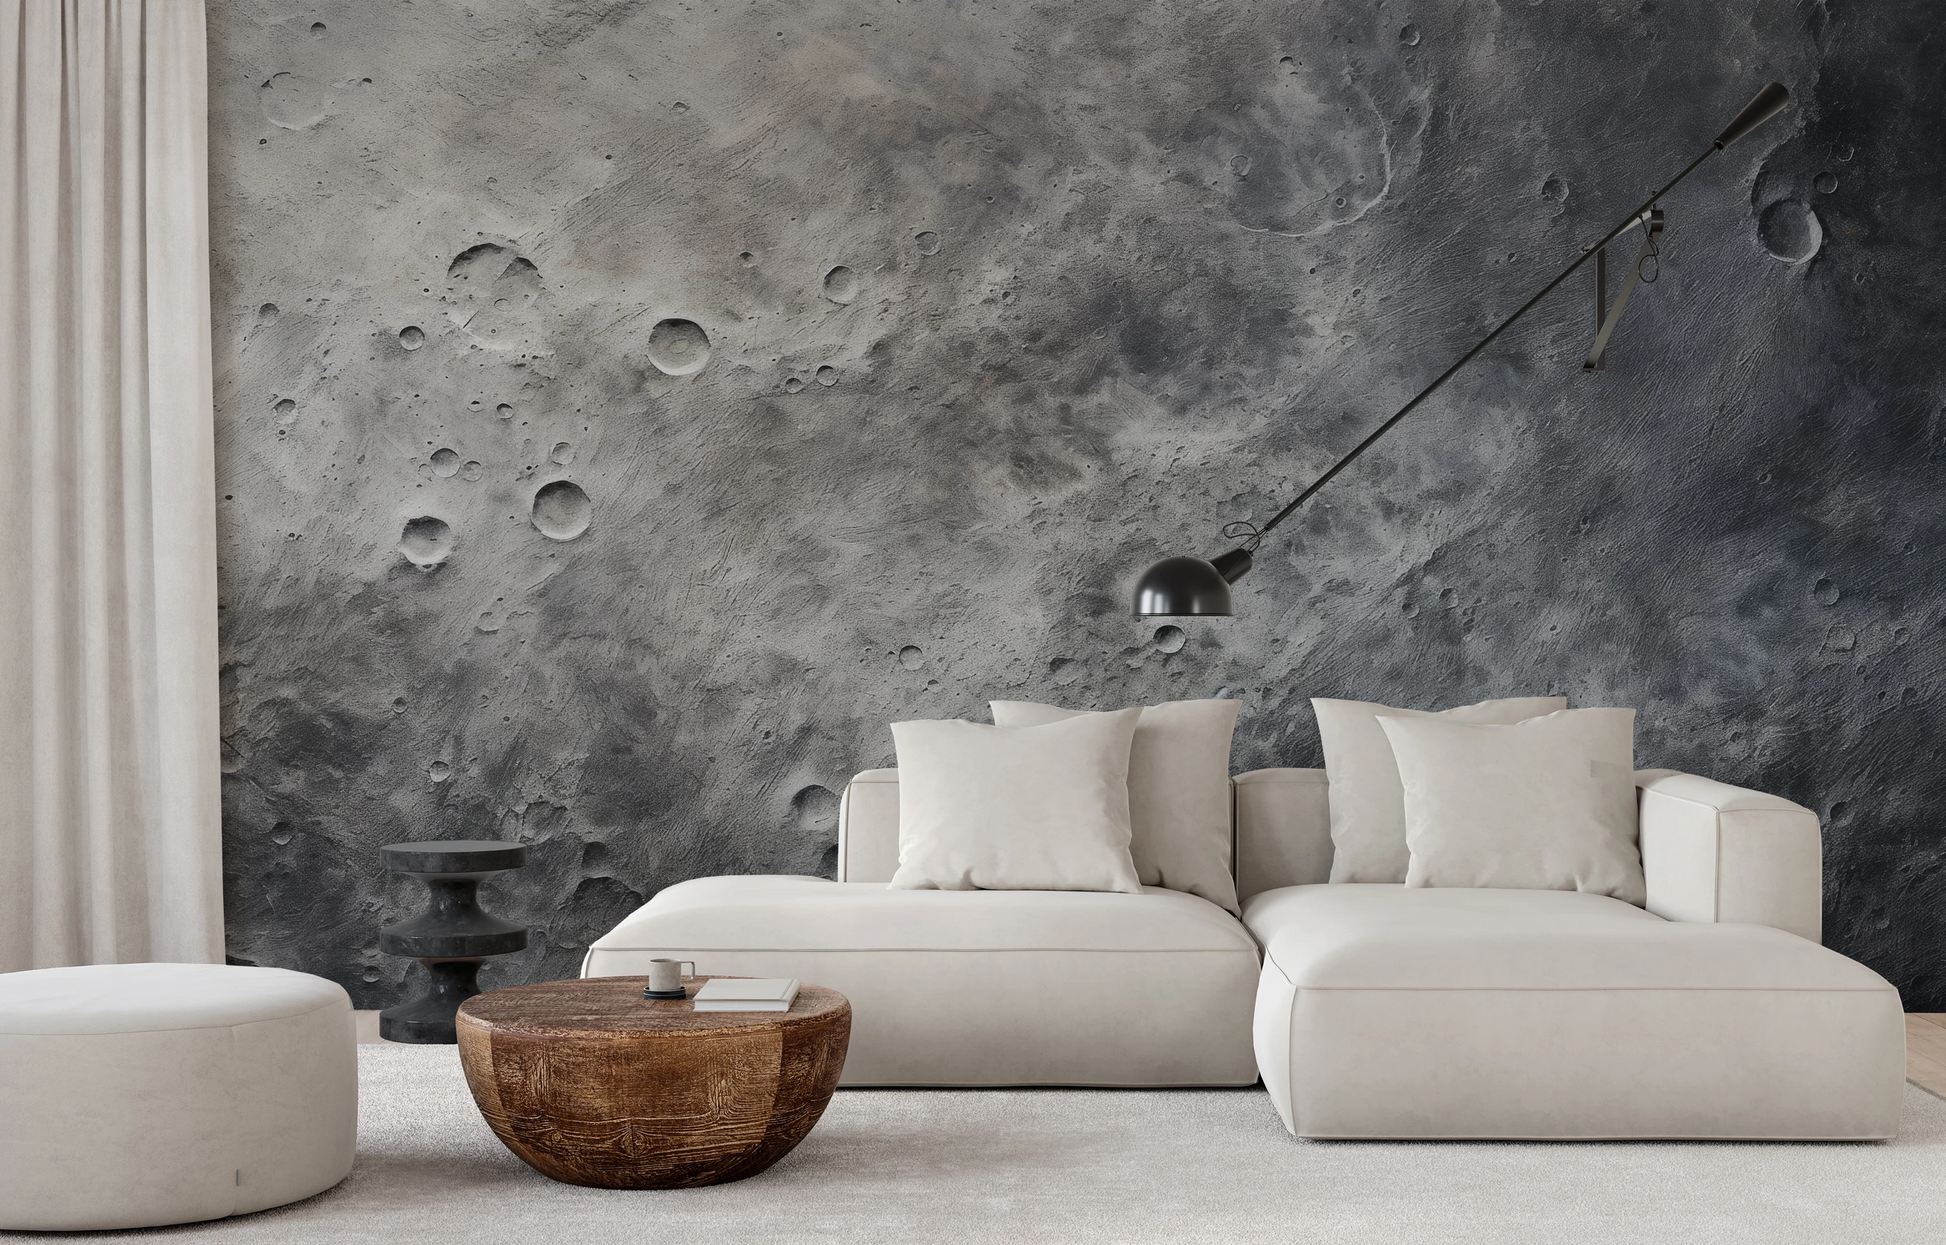 Wzór fototapety artystycznej o nazwie Moon's Tranquility #2 pokazanej w aranżacji wnętrza.